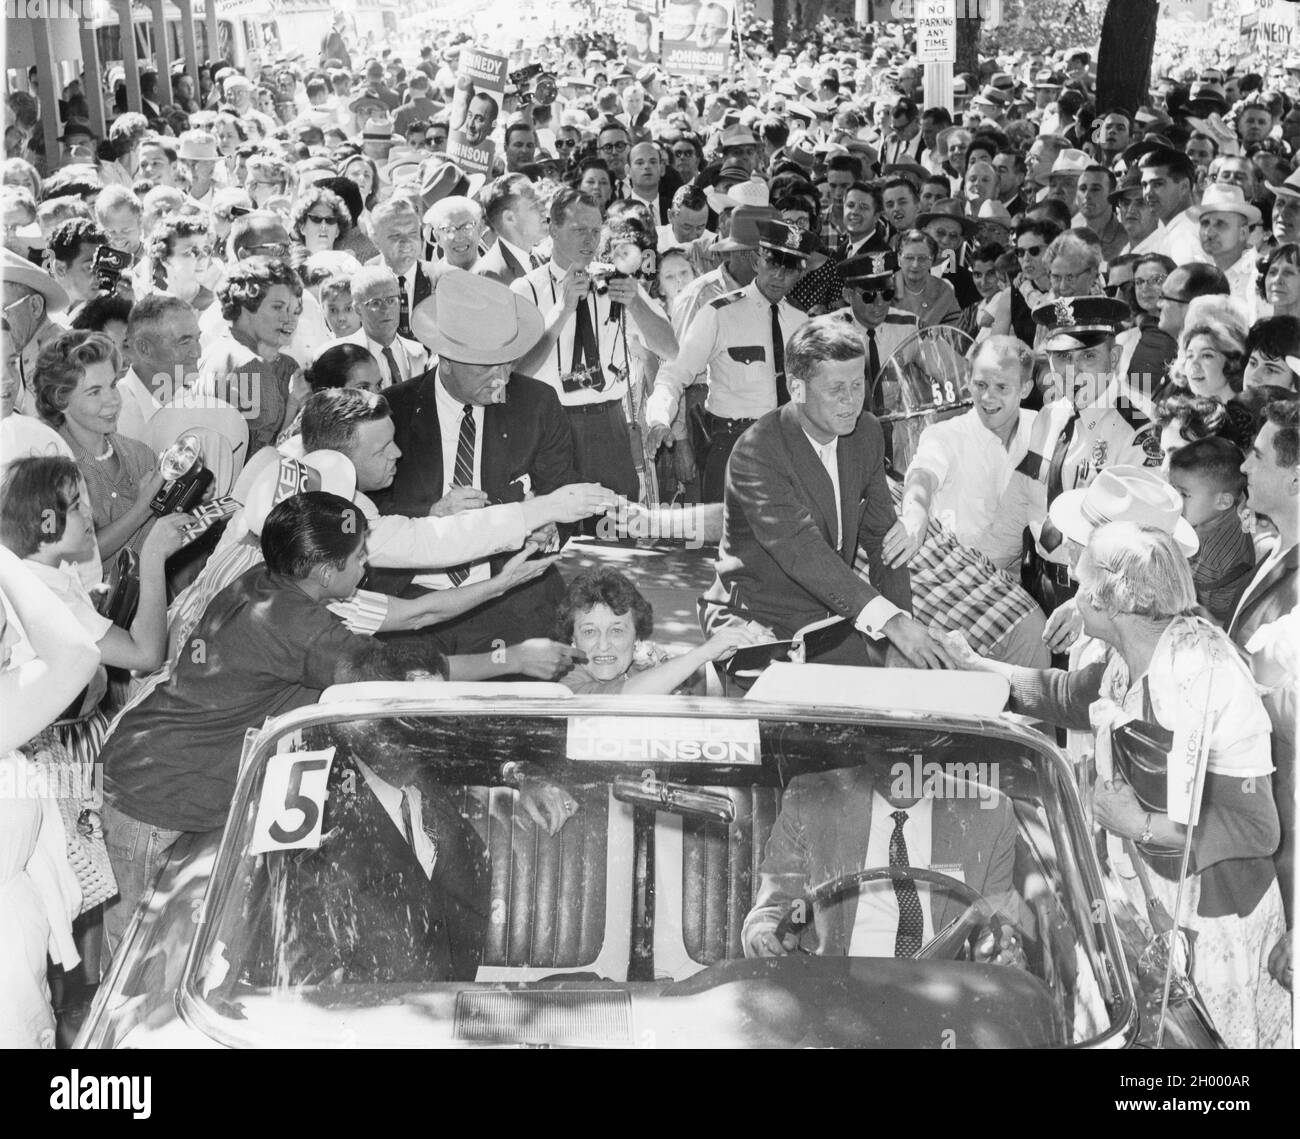 Senator John F. Kennedy (rechts) und Senator Lyndon B. Johnson (links mit Hut) werden zusammen mit Senator Kennedys Mutter Rose Kennedy (in der Mitte, im Auto sitzend) von Unterstützern begrüßt, als sie den Burnett Park auf dem Weg nach Dallas, Texas, verlassen. Die beiden waren im US-Bundesstaat, der sich für den Präsidenten- und den Vizepräsidentschaftsposten der USA auf der Democratic-Karte einsetzte. Fort Worth, Texas, 1960. Stockfoto